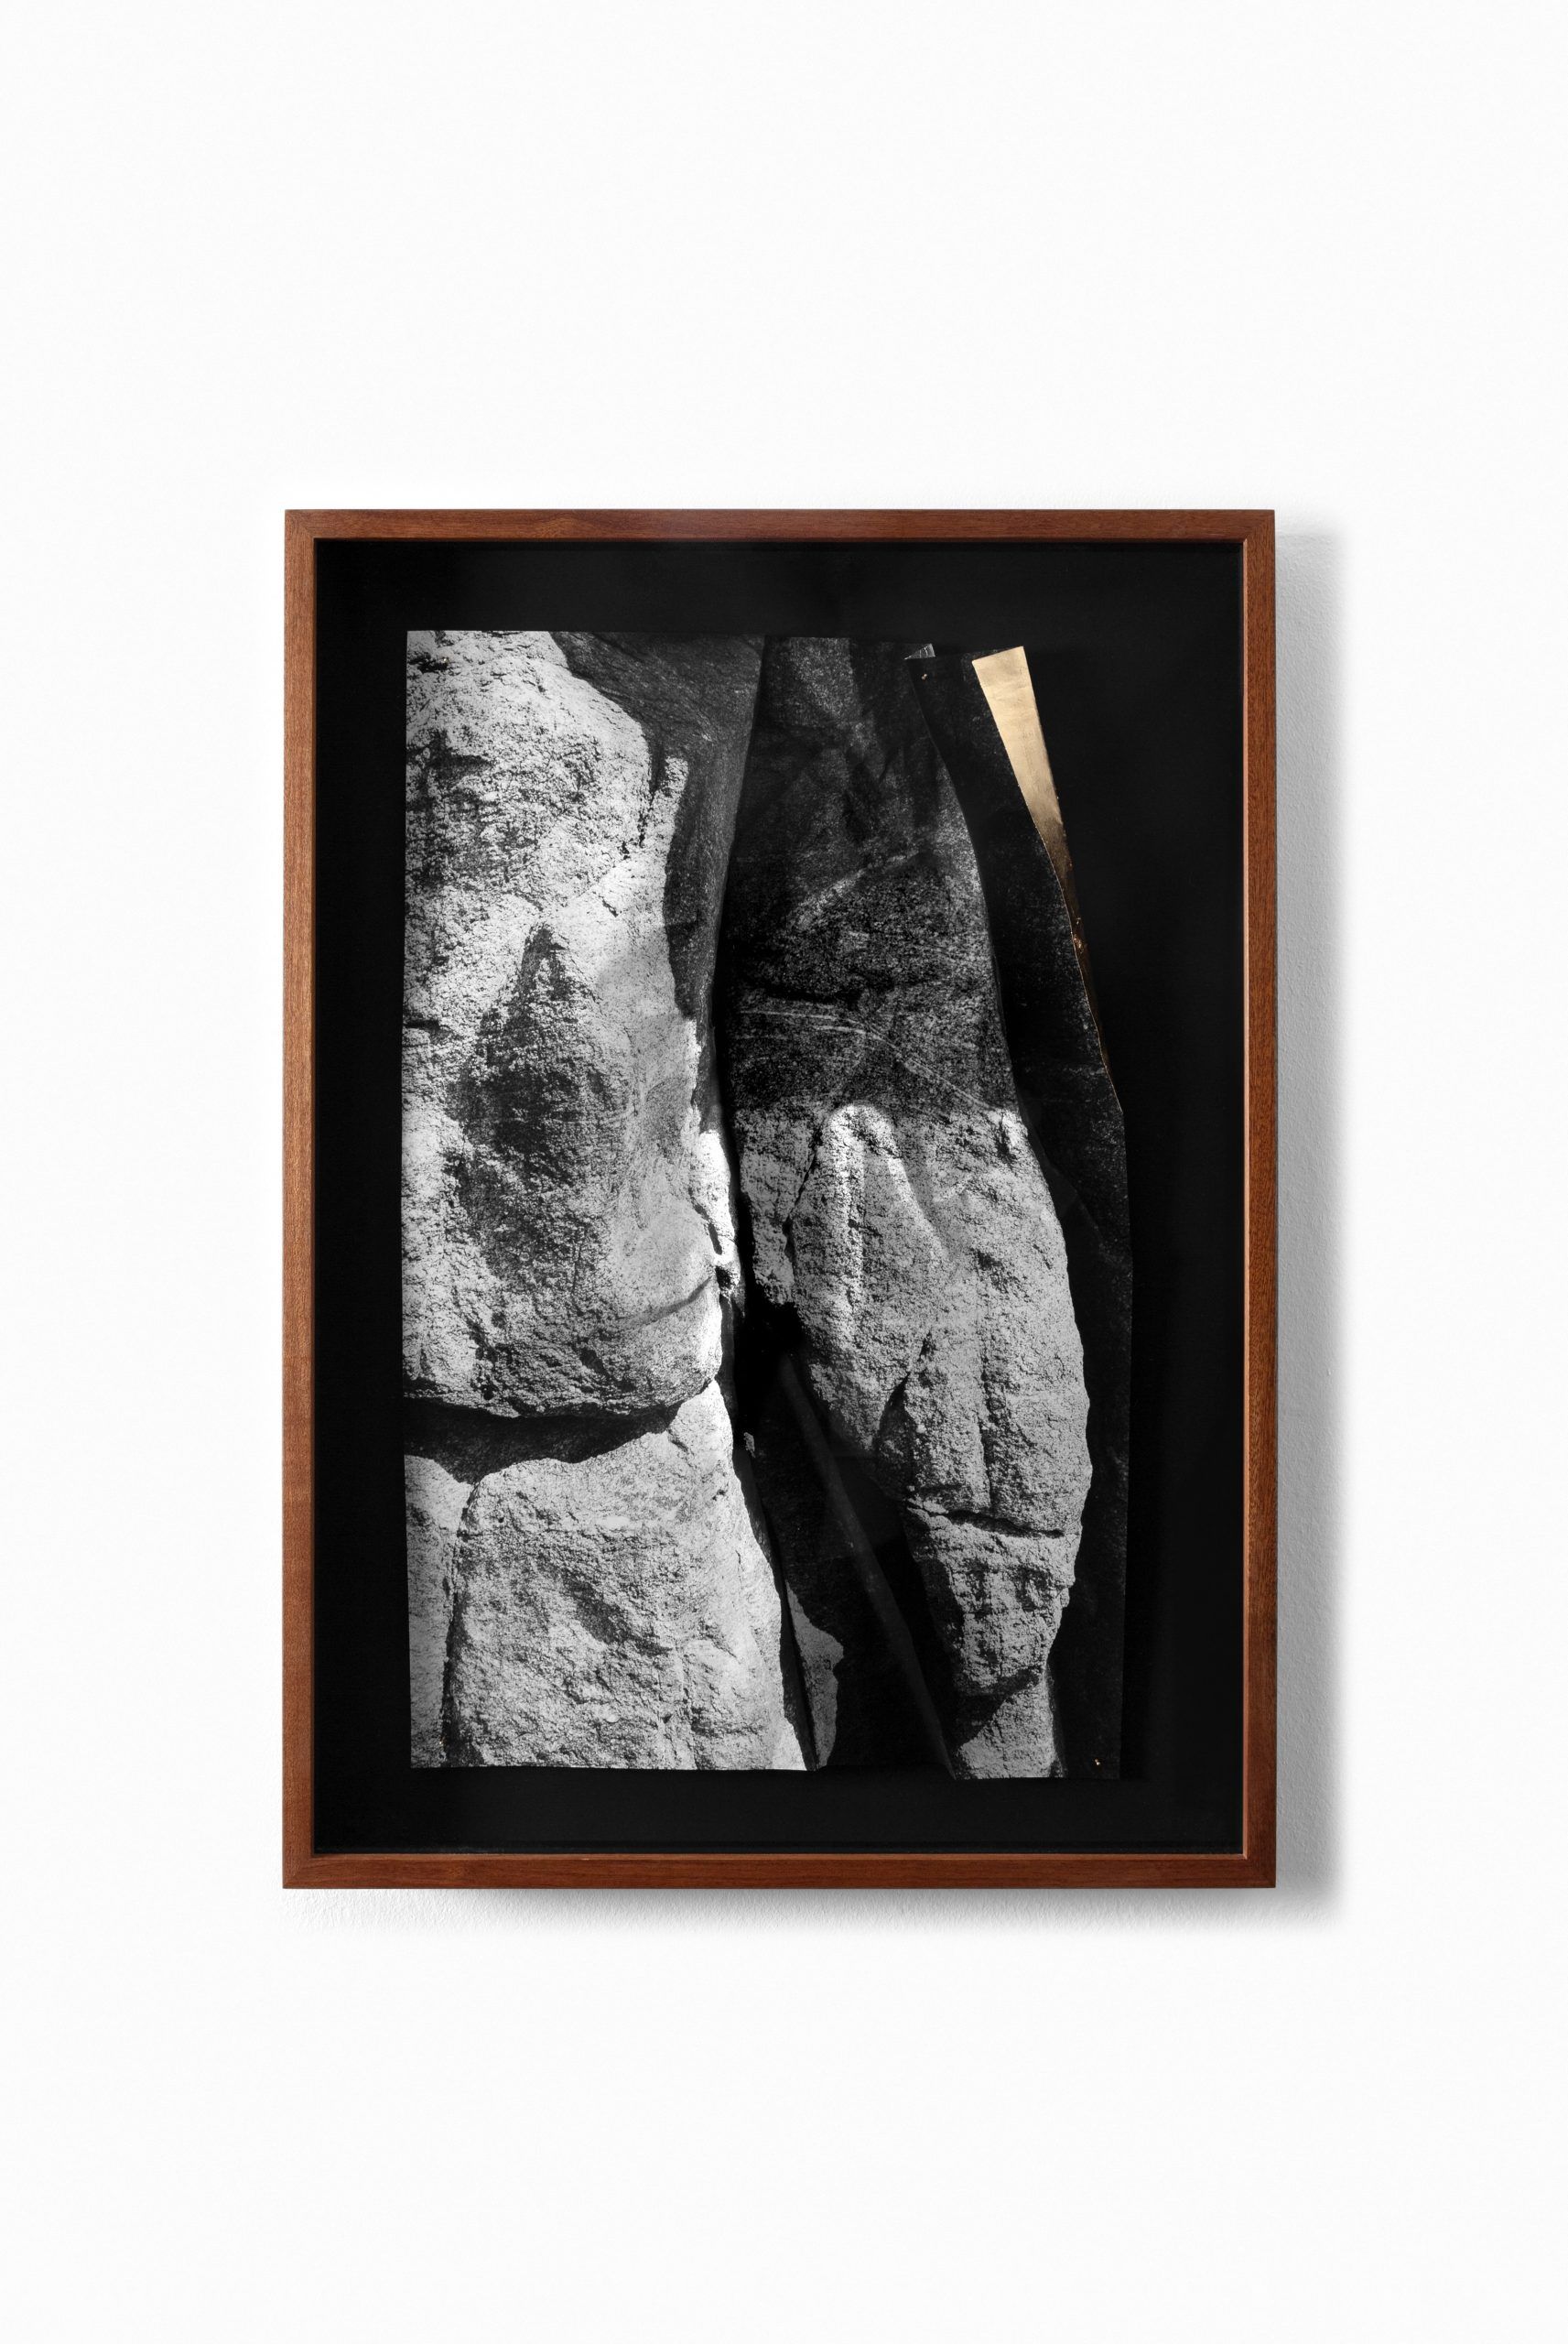 © Sumie Garcia Hriata Broken Rock Umbral Series courtesy ammann gallery